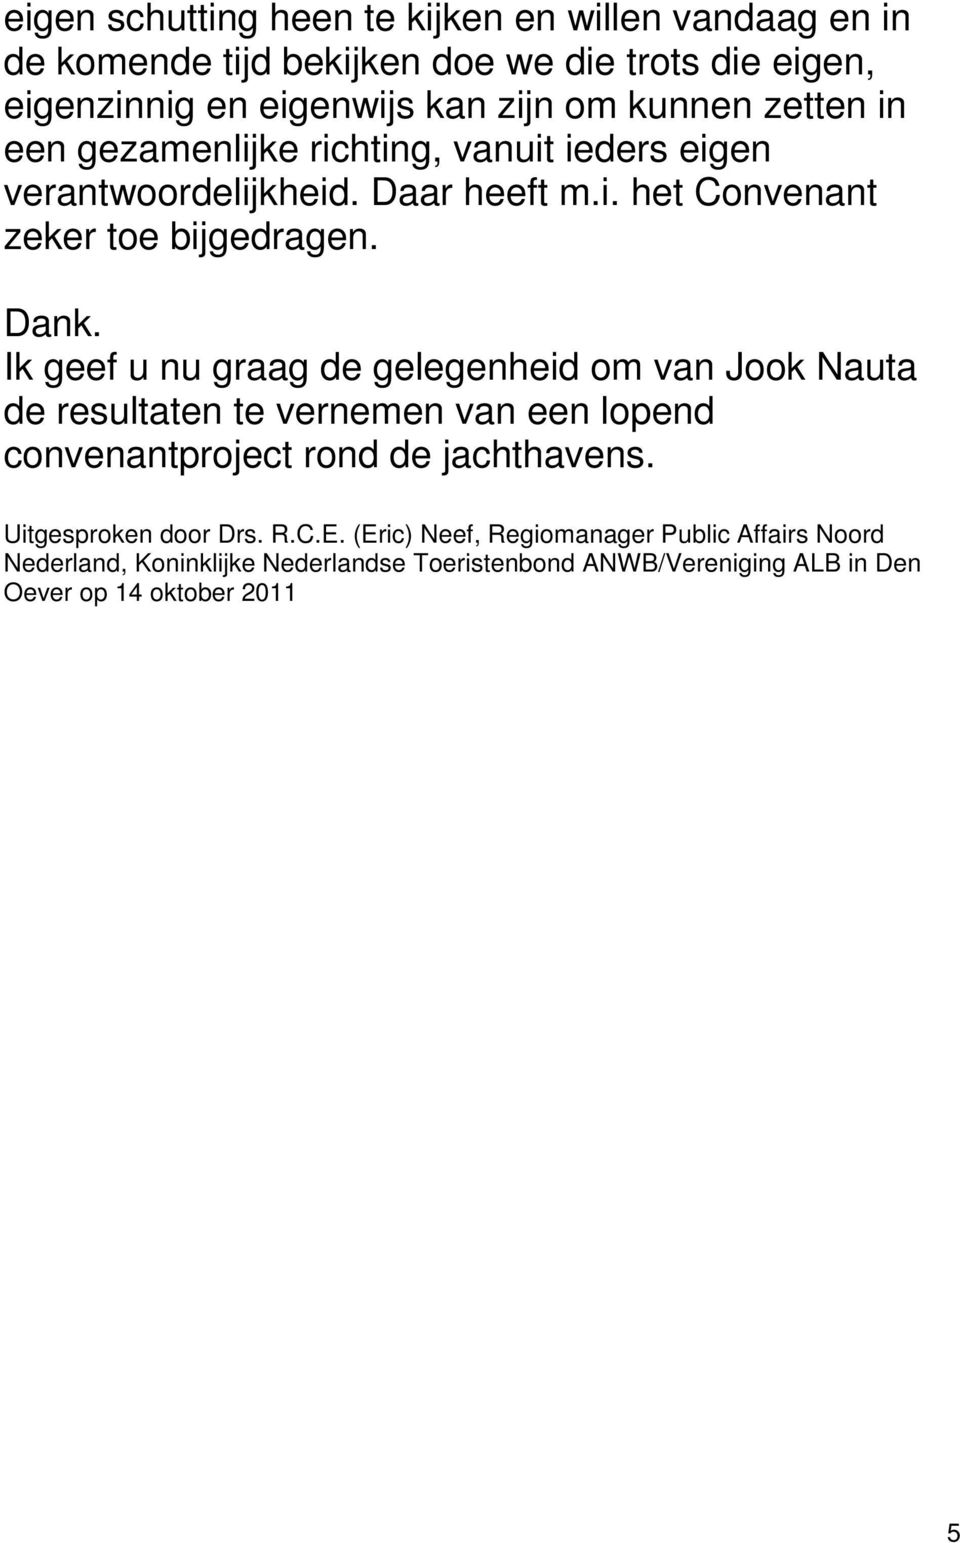 Ik geef u nu graag de gelegenheid om van Jook Nauta de resultaten te vernemen van een lopend convenantproject rond de jachthavens.